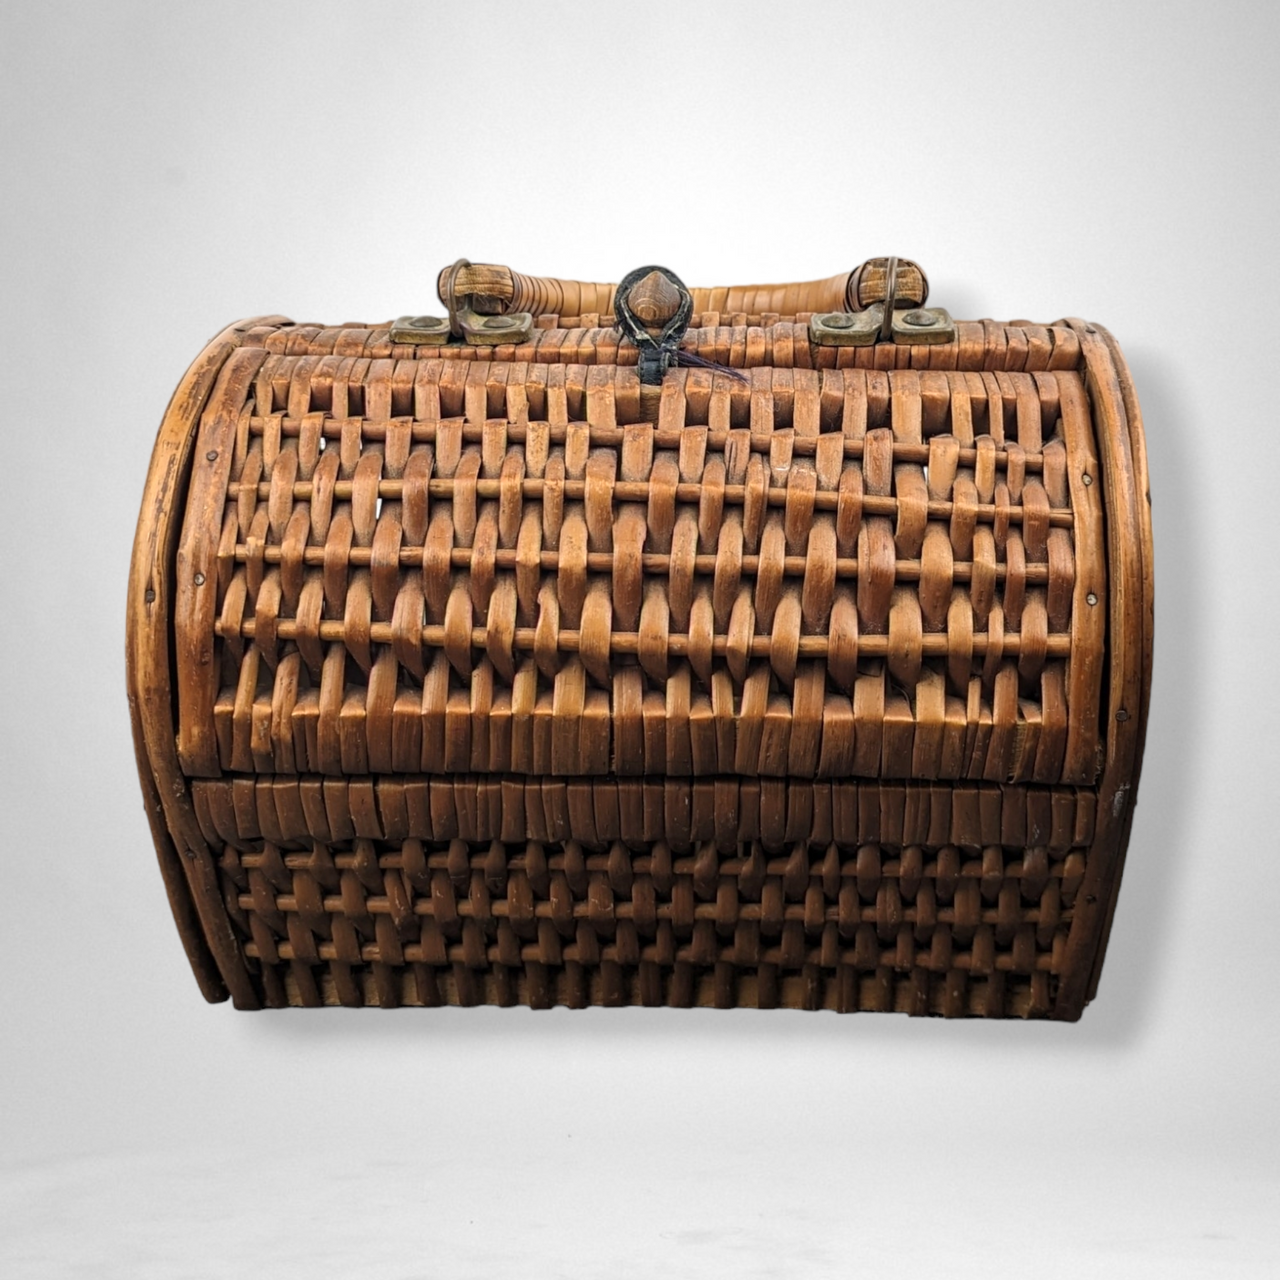 Vintage picnic basket purse Made in Hong... - Depop